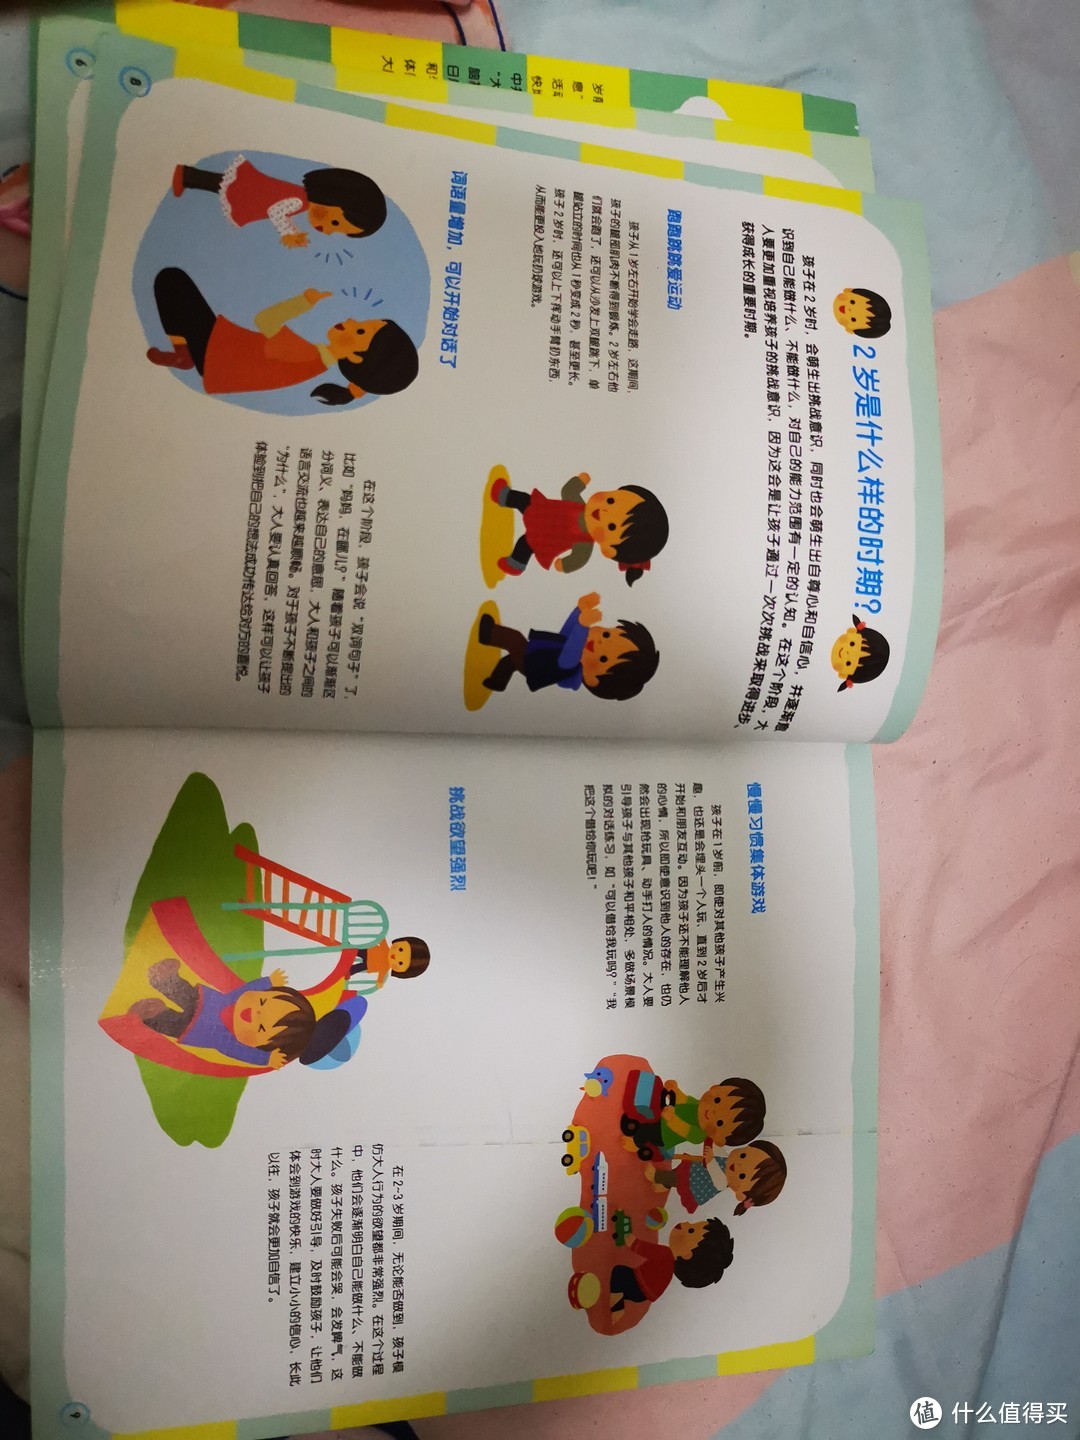 2岁+符合孩子认知发展的自用绘本推荐